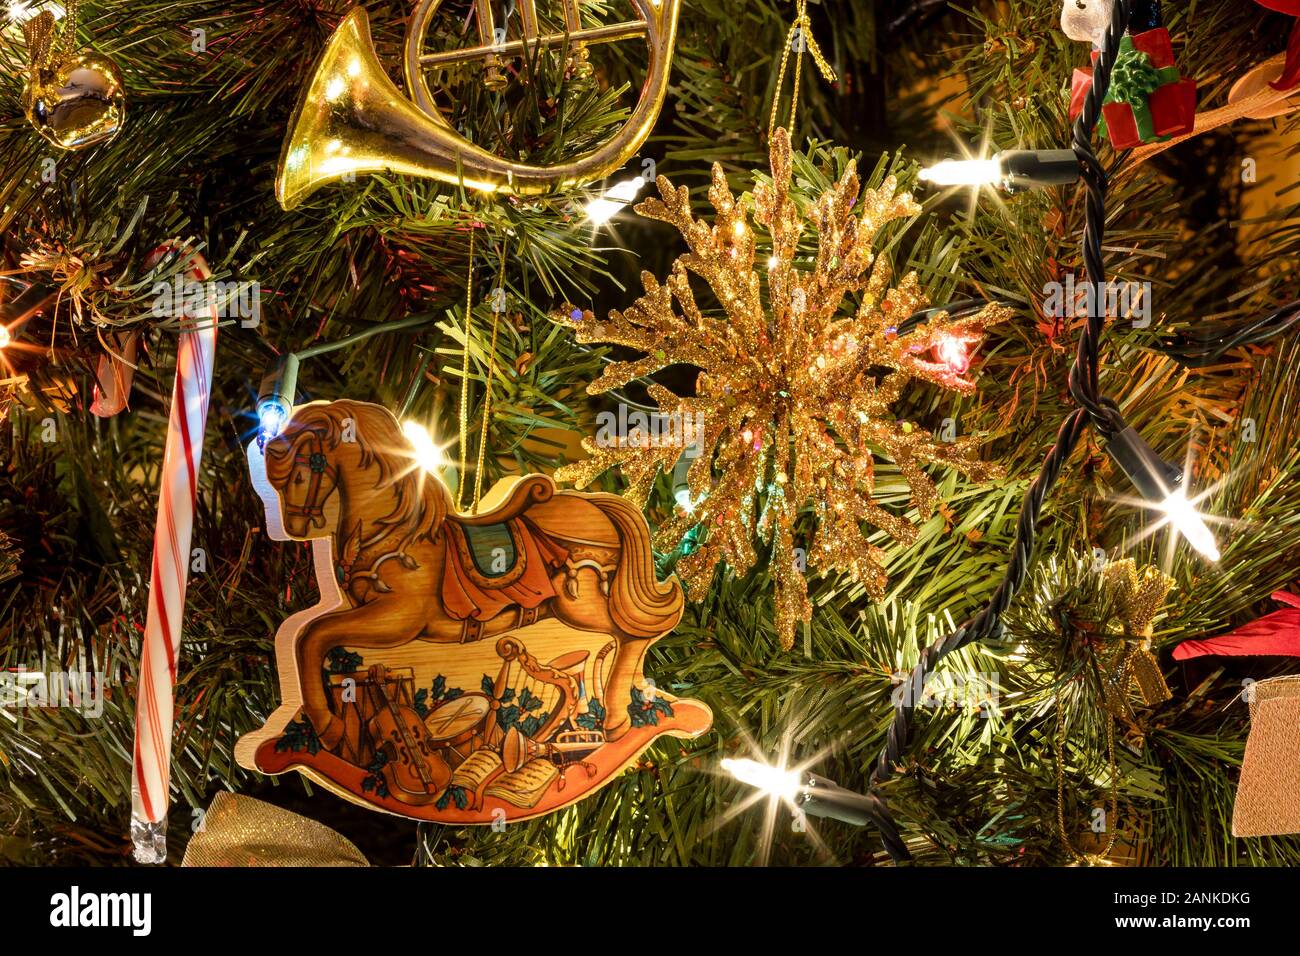 Arbre de Noël avec des ornements et des lumières Banque D'Images